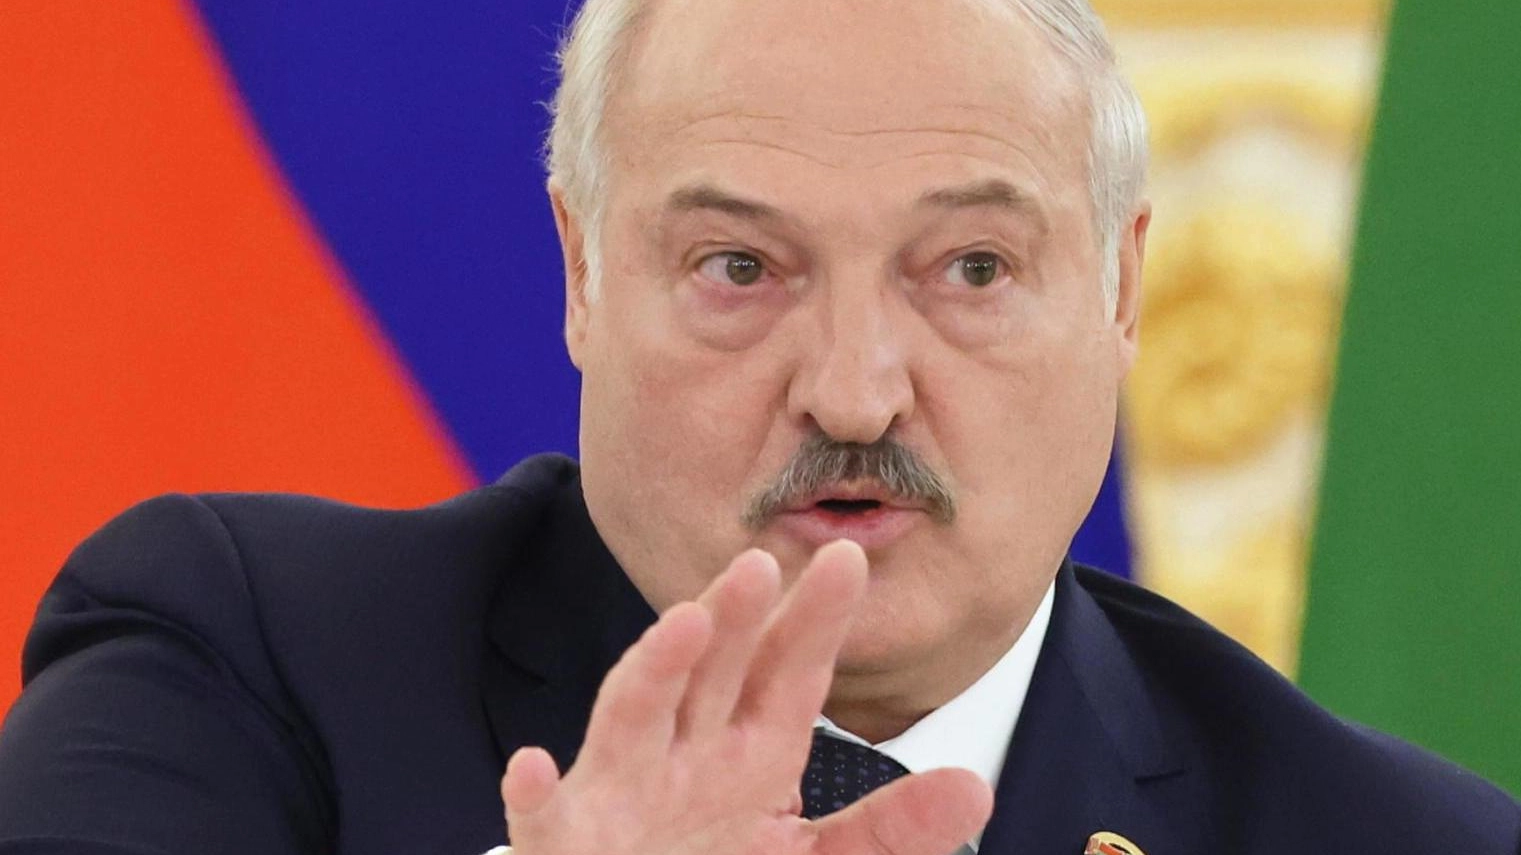 Il ruolo di Lukashenko  Da vassallo di Putin  a leader autonomo  E con un amico in più